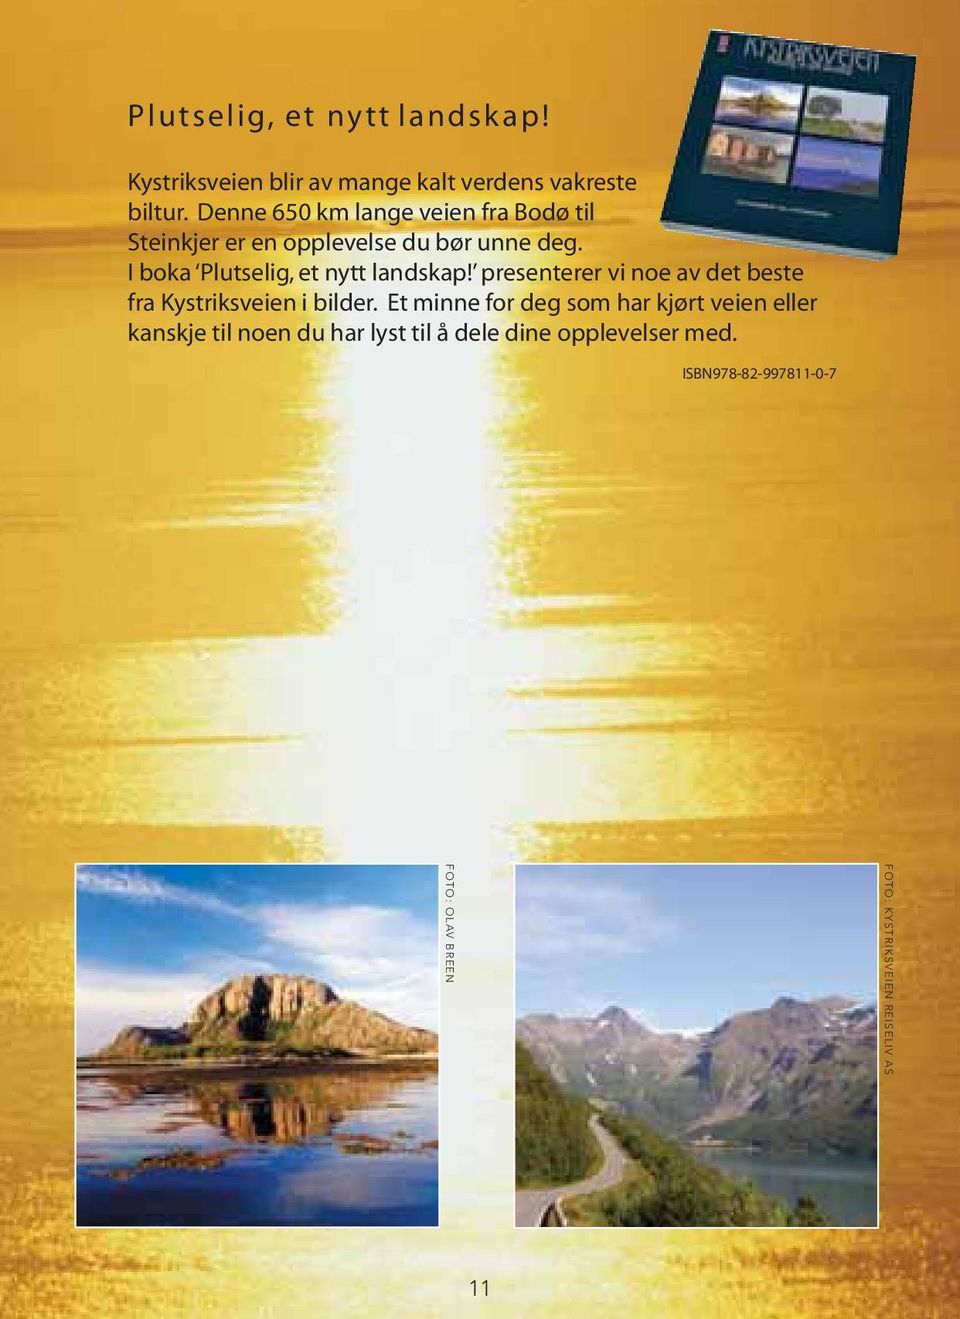 I boka Plutselig, et nytt landskap! presenterer vi noe av det beste fra Kystriksveien i bilder.